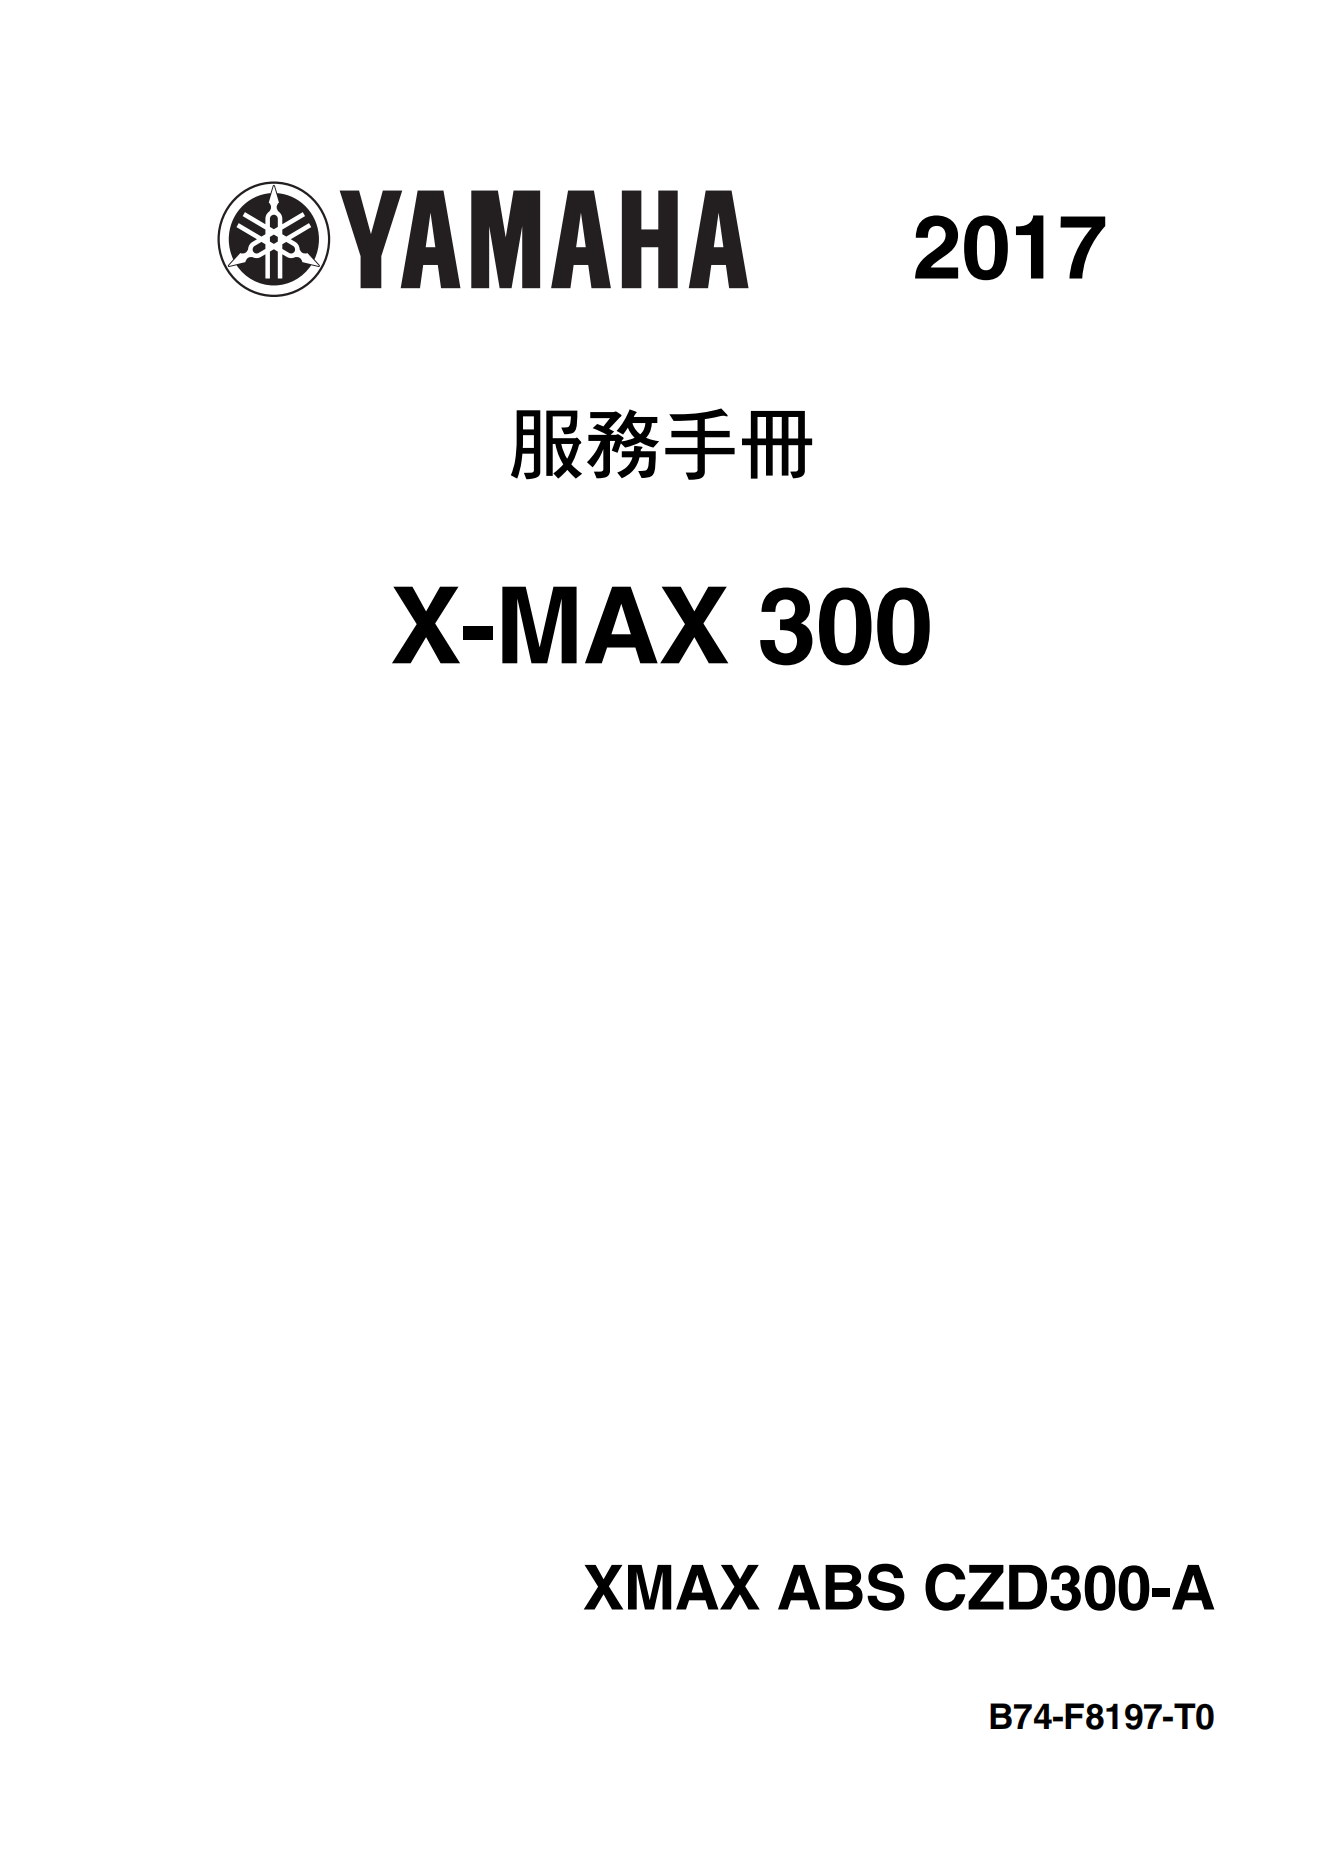 繁体中文2017年雅马哈xmax300维修手册x-max300维修手册插图